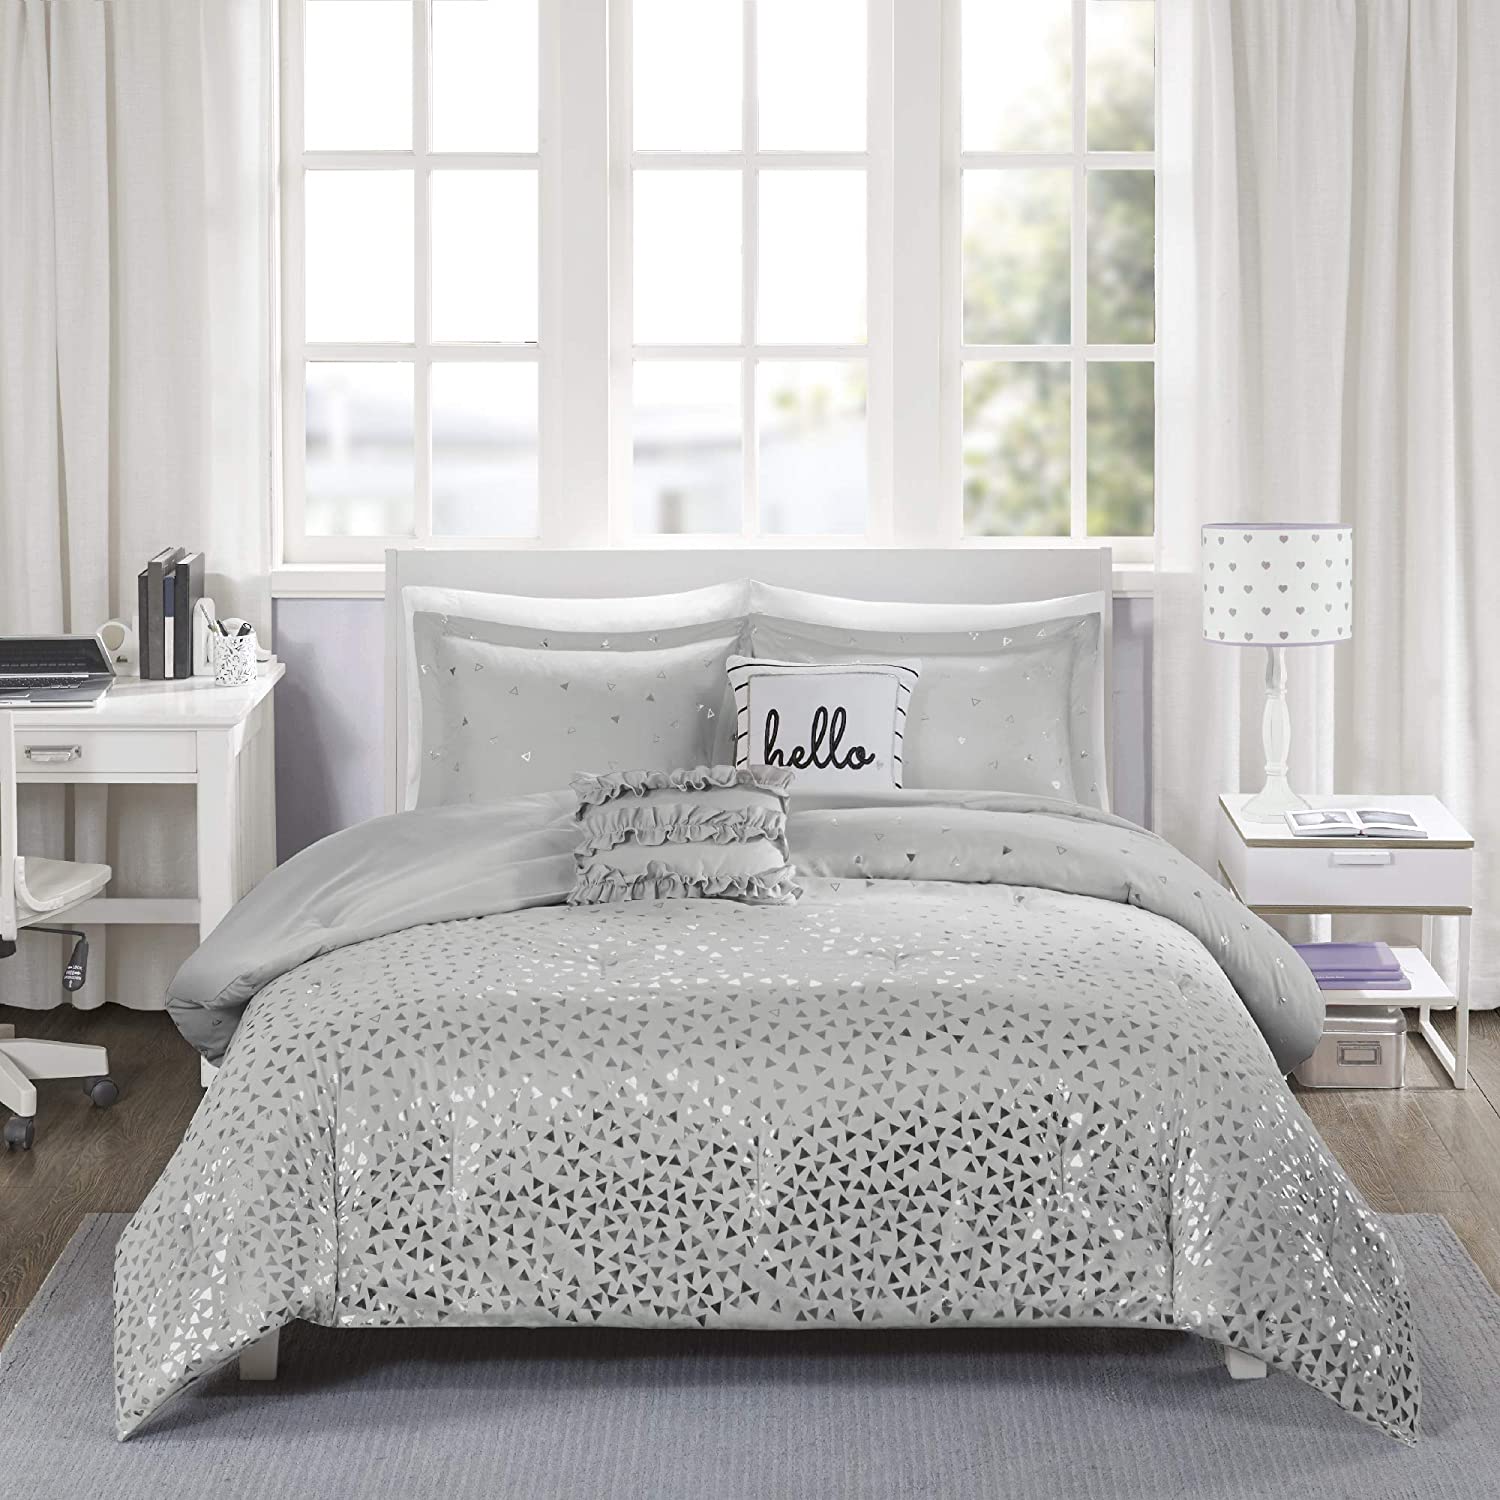 Intelligent Design Zoey Comforter Bedding Set Full/Queen Grey/Silver